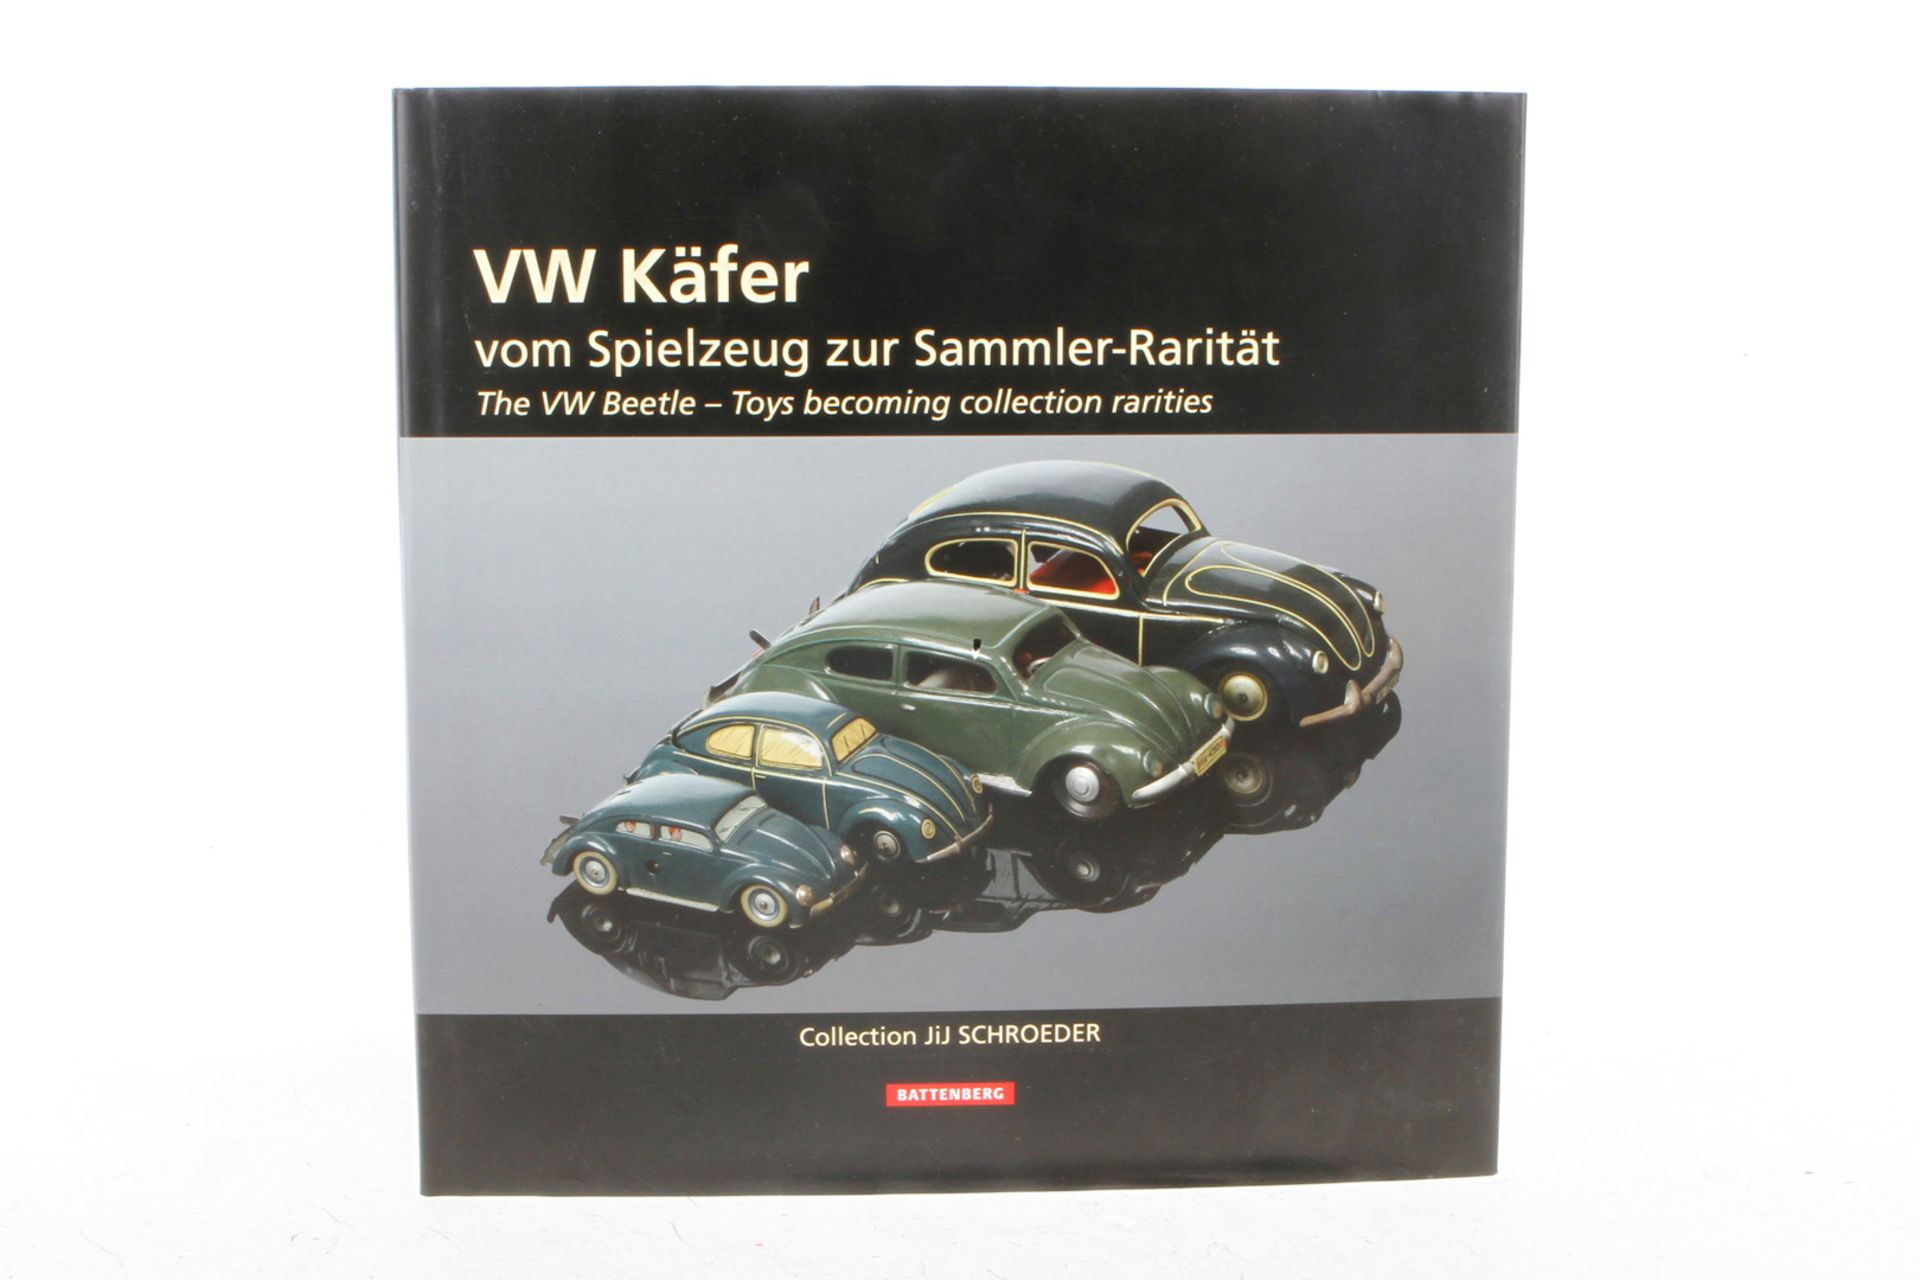 Battenberg-Buch ”VW Käfer”, Alterungsspuren